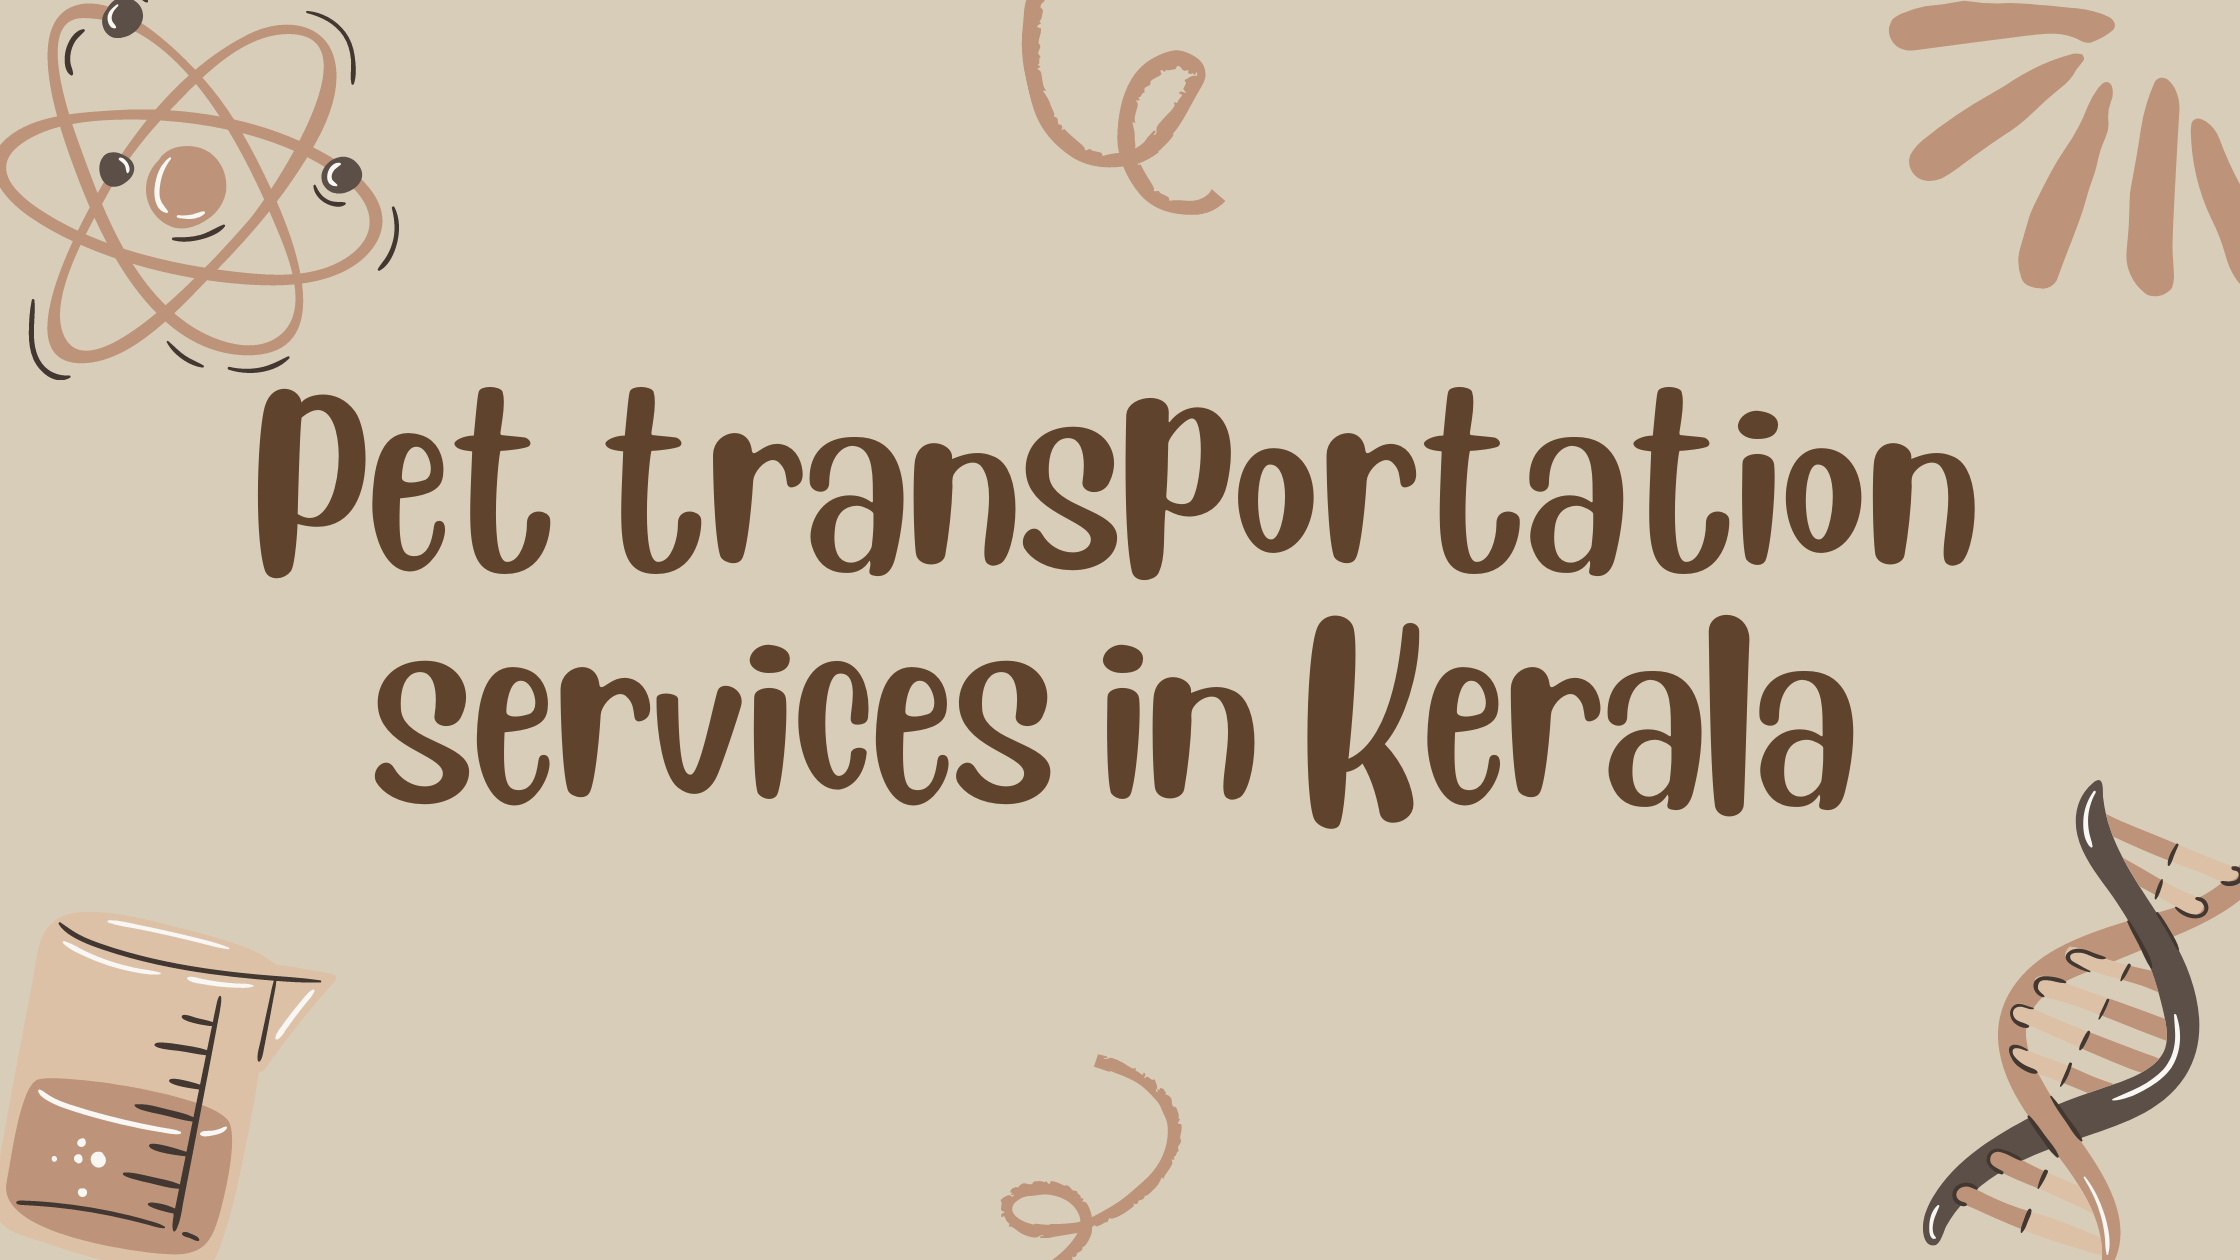 Pet transportation services in Kerala - RoadTaka